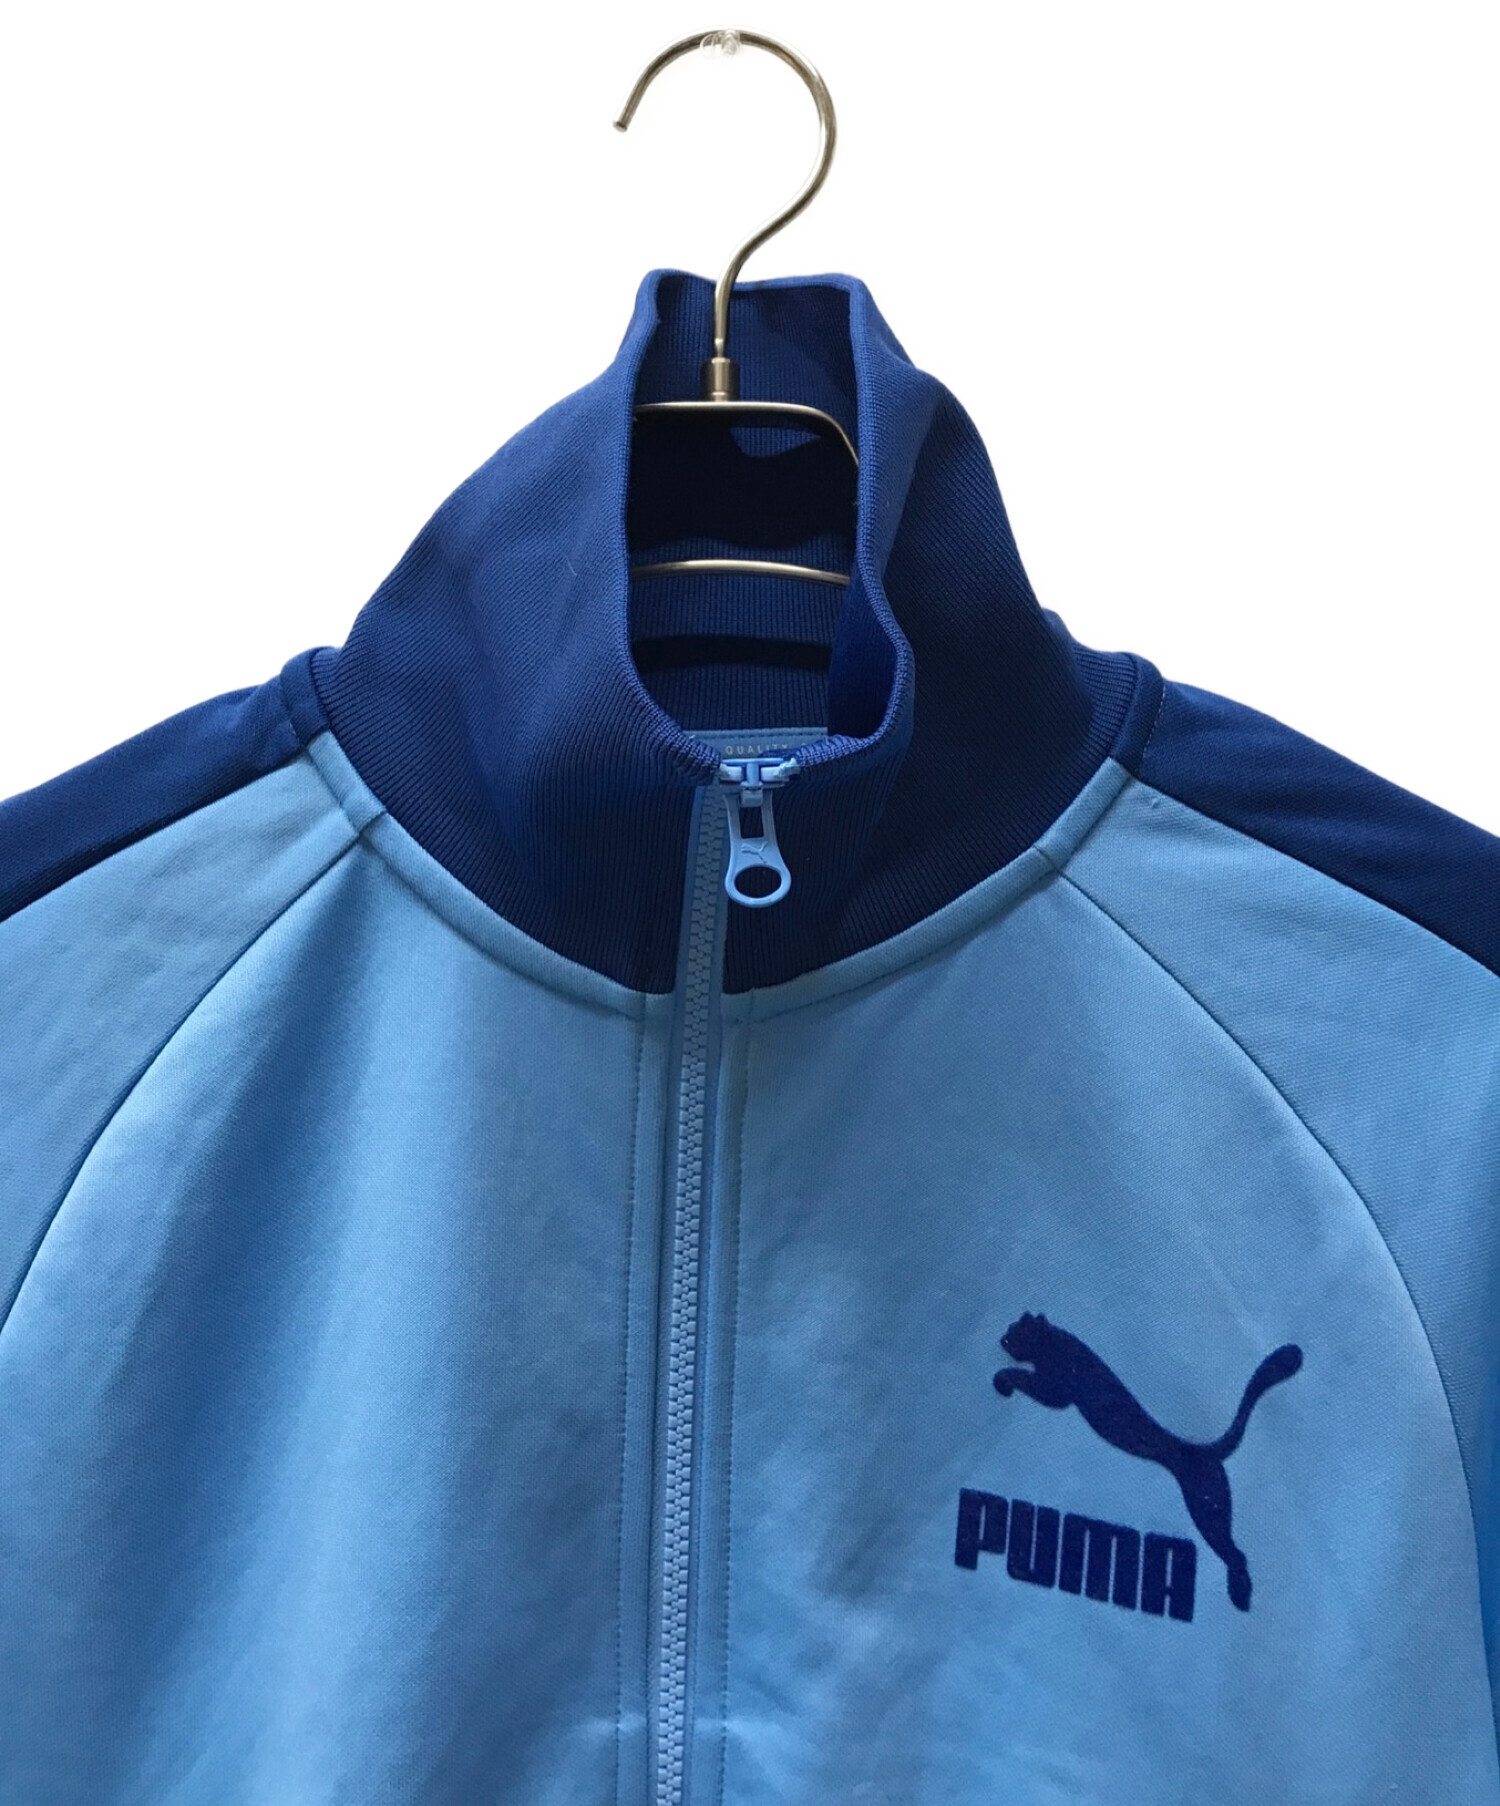 PUMA (プーマ) RAY BEAMS (レイ ビームス) T7トラックジャケット ブルー サイズ:S